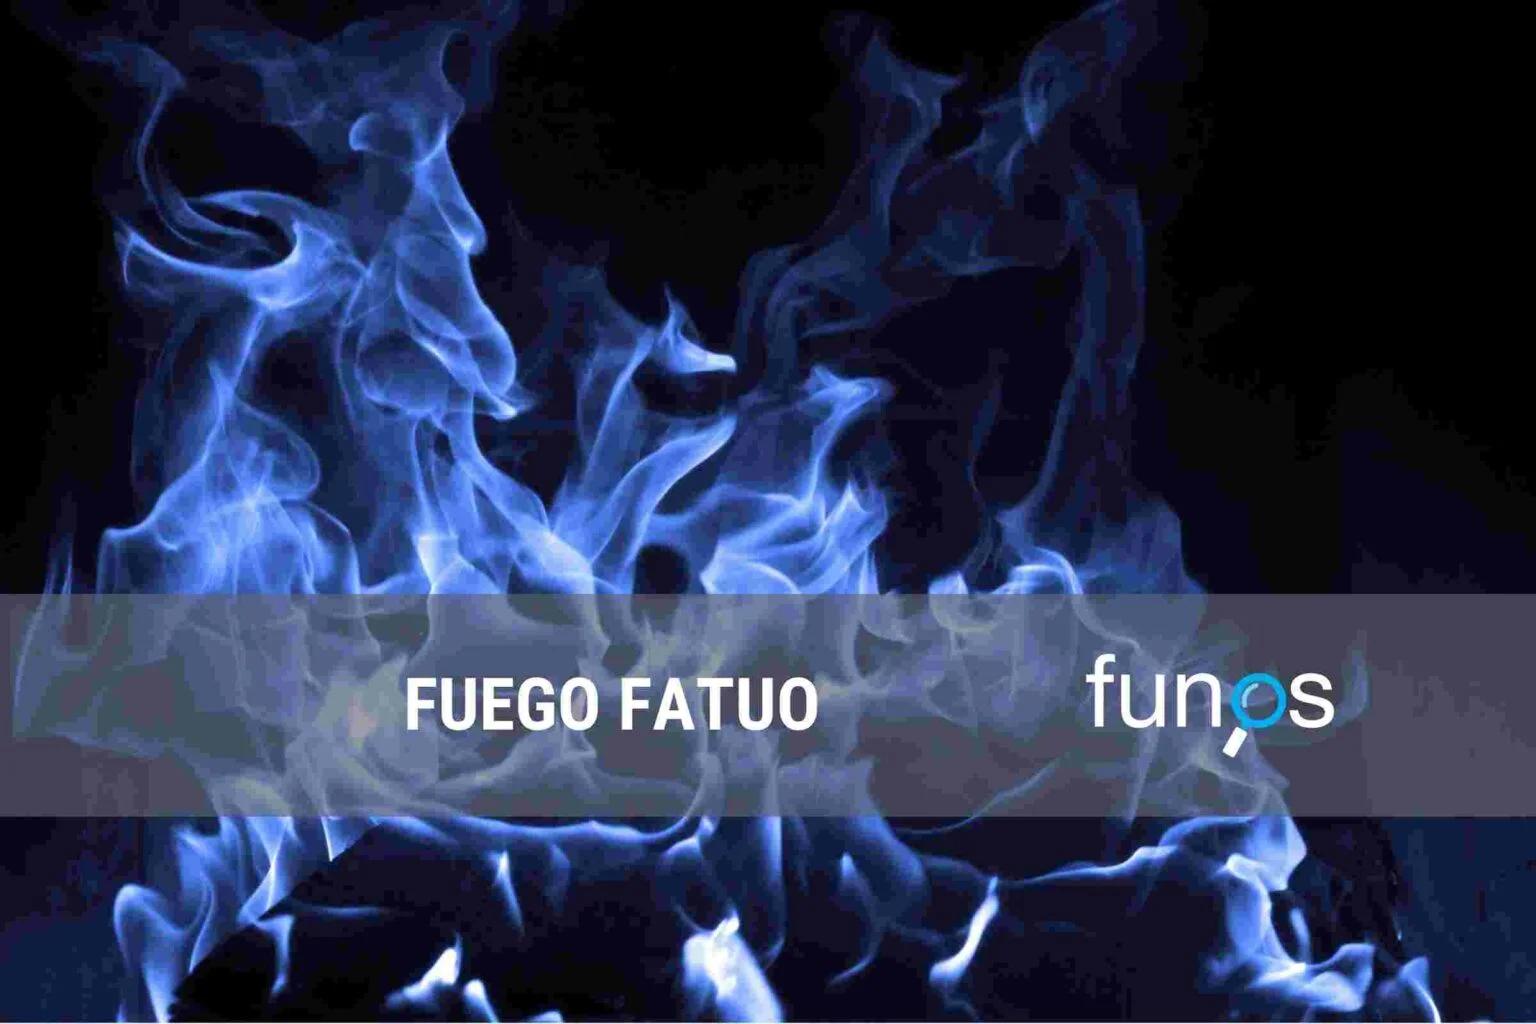 Post sobre Fuego fatuo en Funos